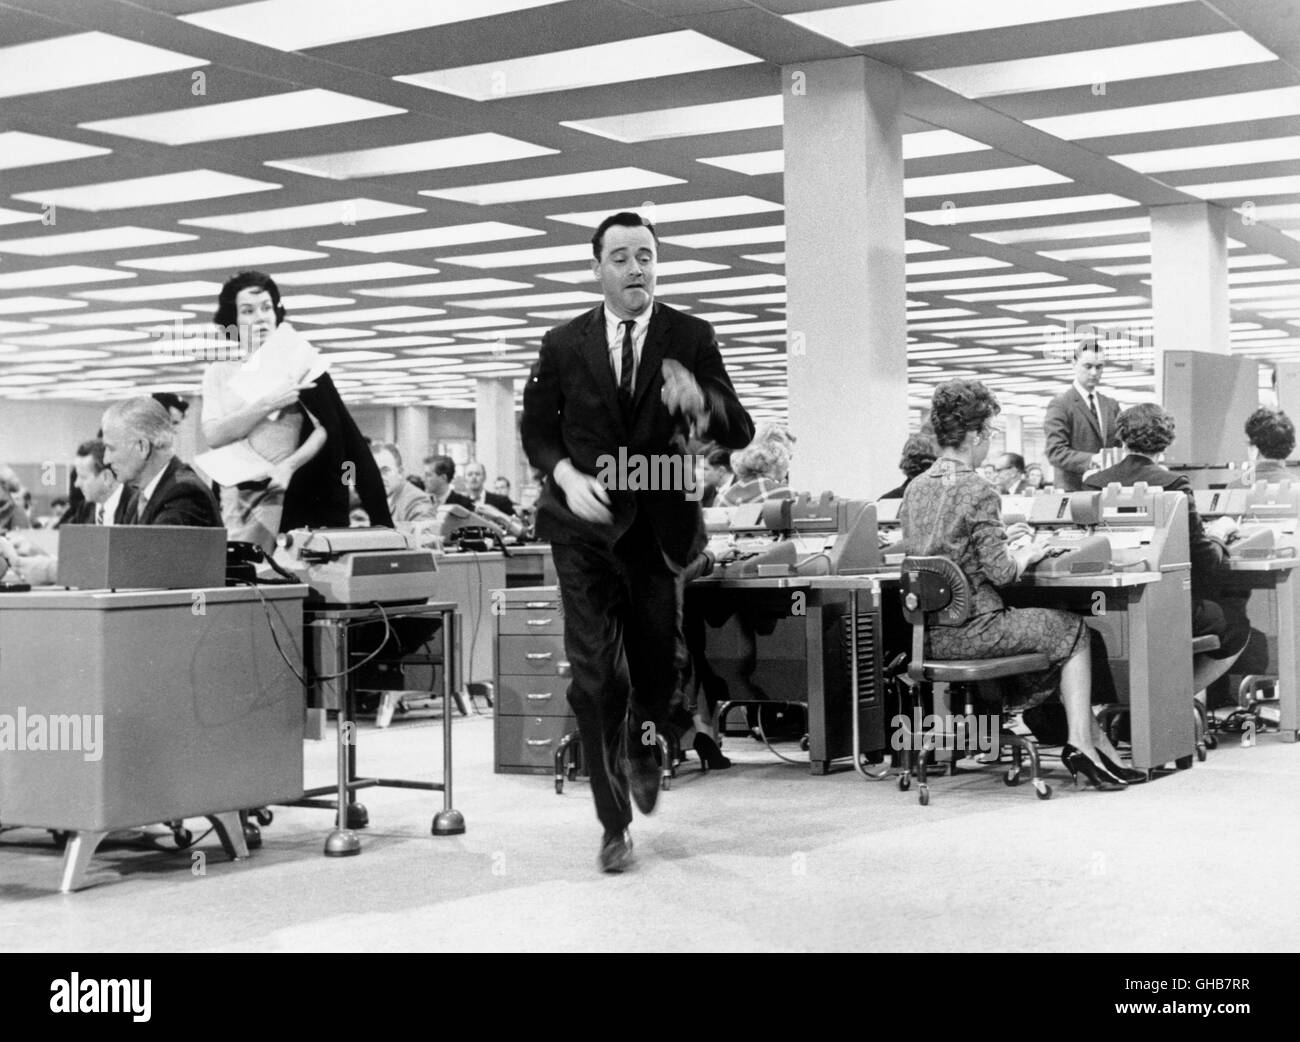 DAS APPARTEMENT Appartamento USA 1960 Billy Wilder Baxter (JACK LEMMON) Großraumbüro im. Komödie Regie: Billy Wilder aka. L' appartamento Foto Stock